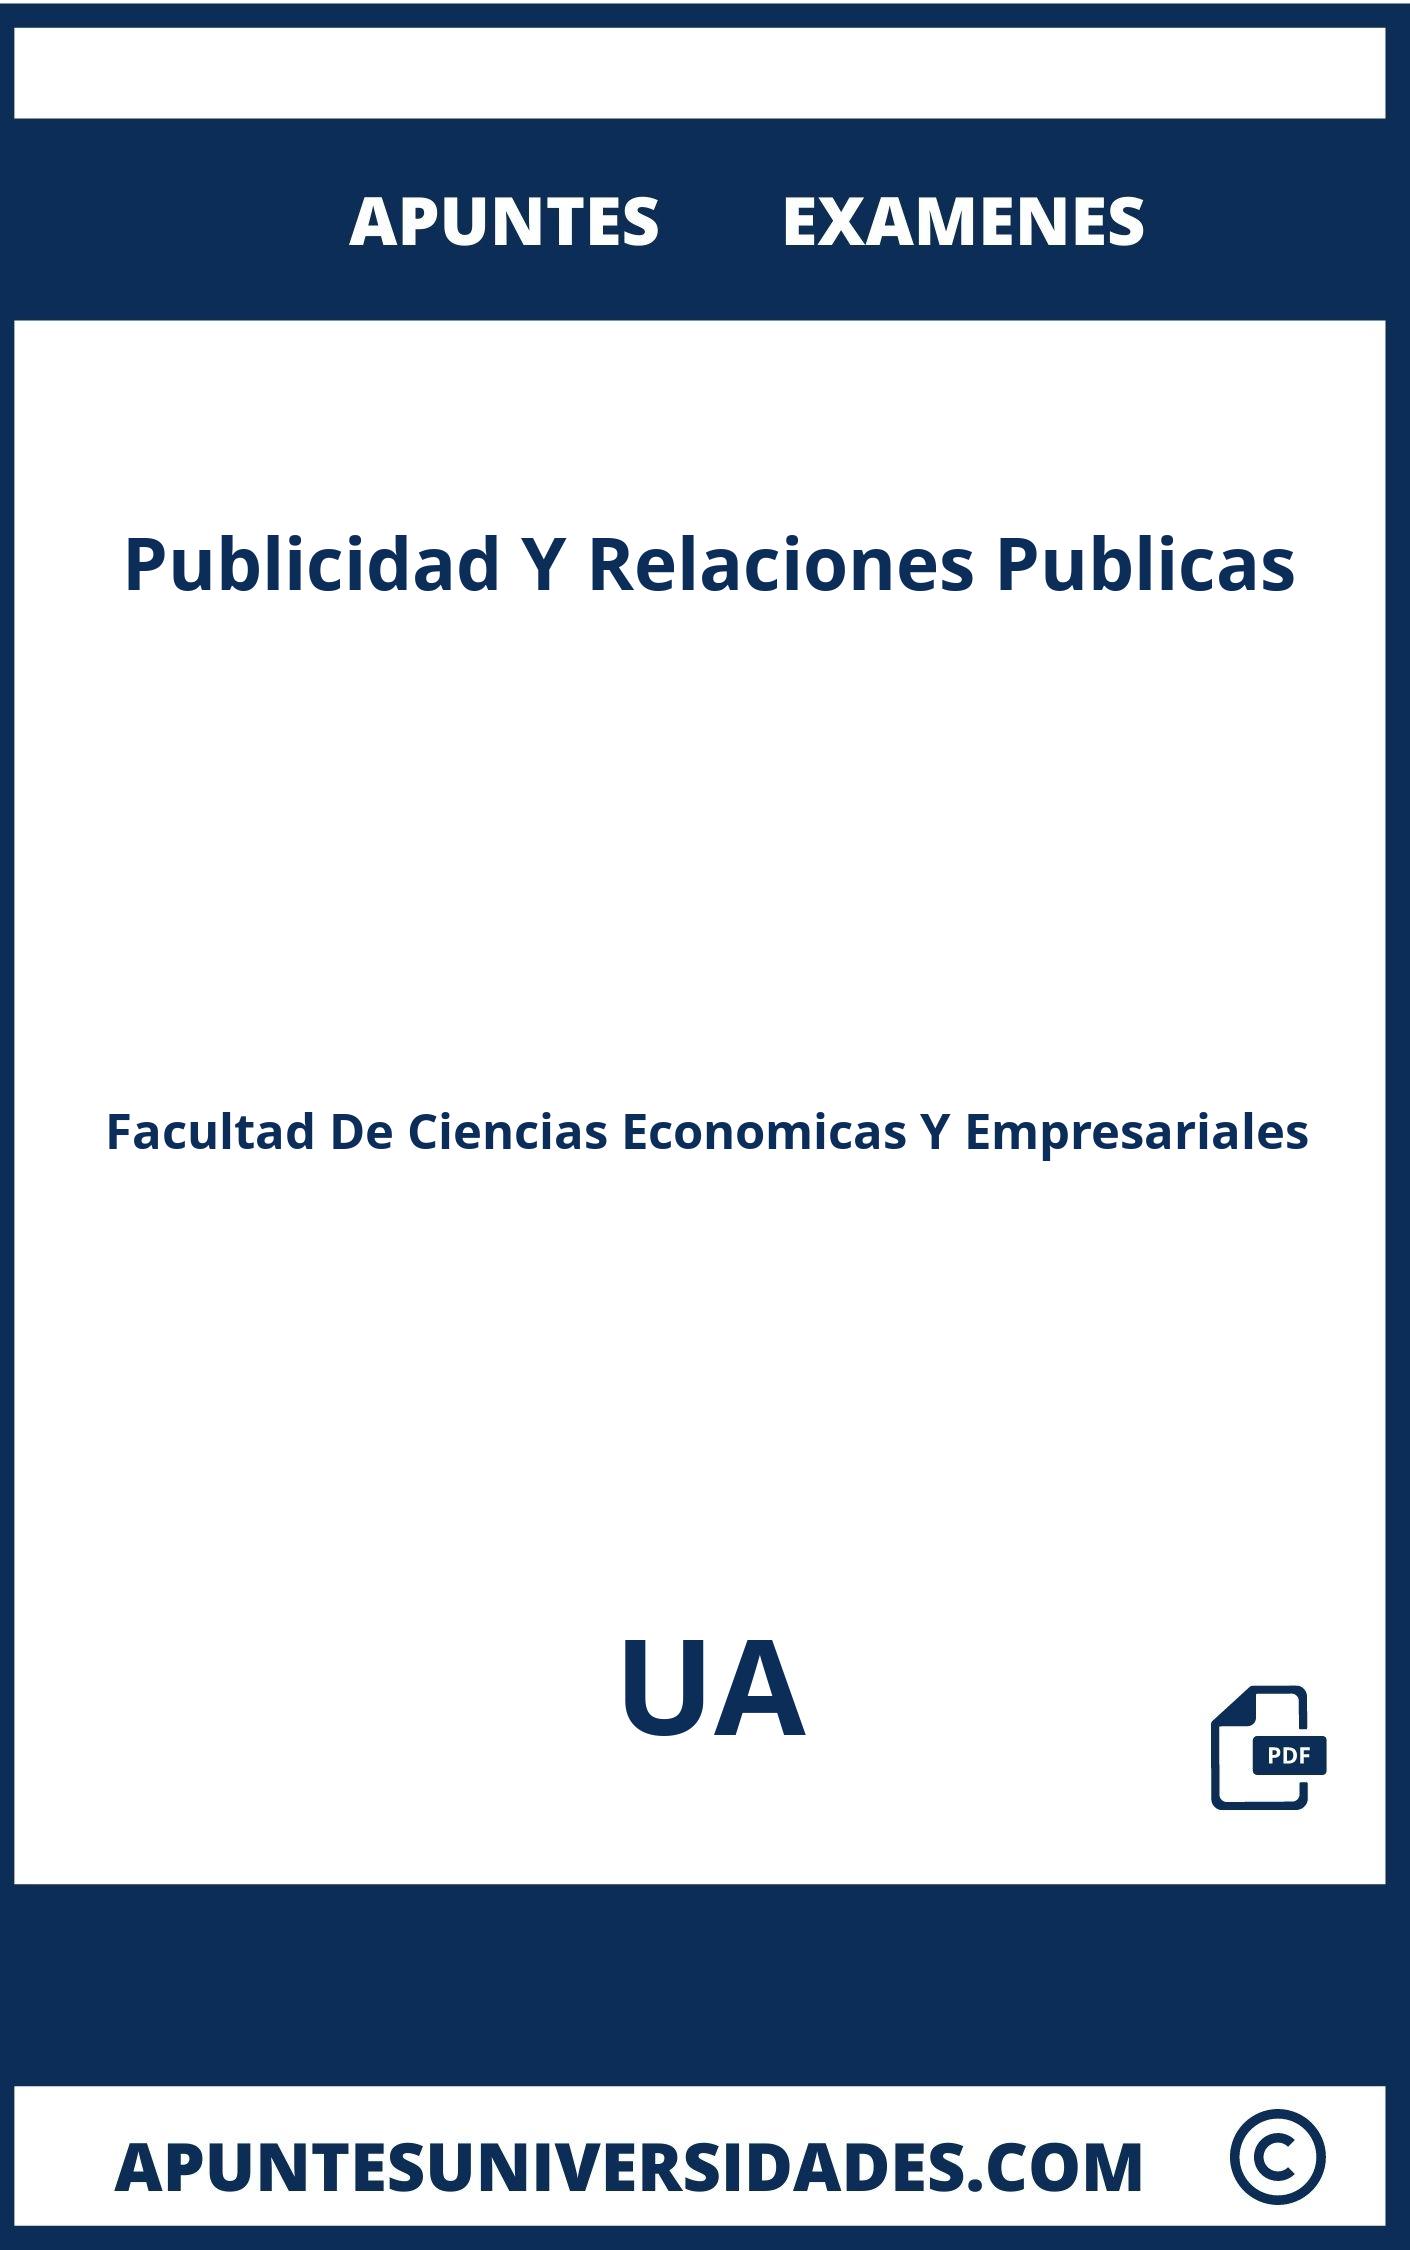 Apuntes y Examenes Publicidad Y Relaciones Publicas UA